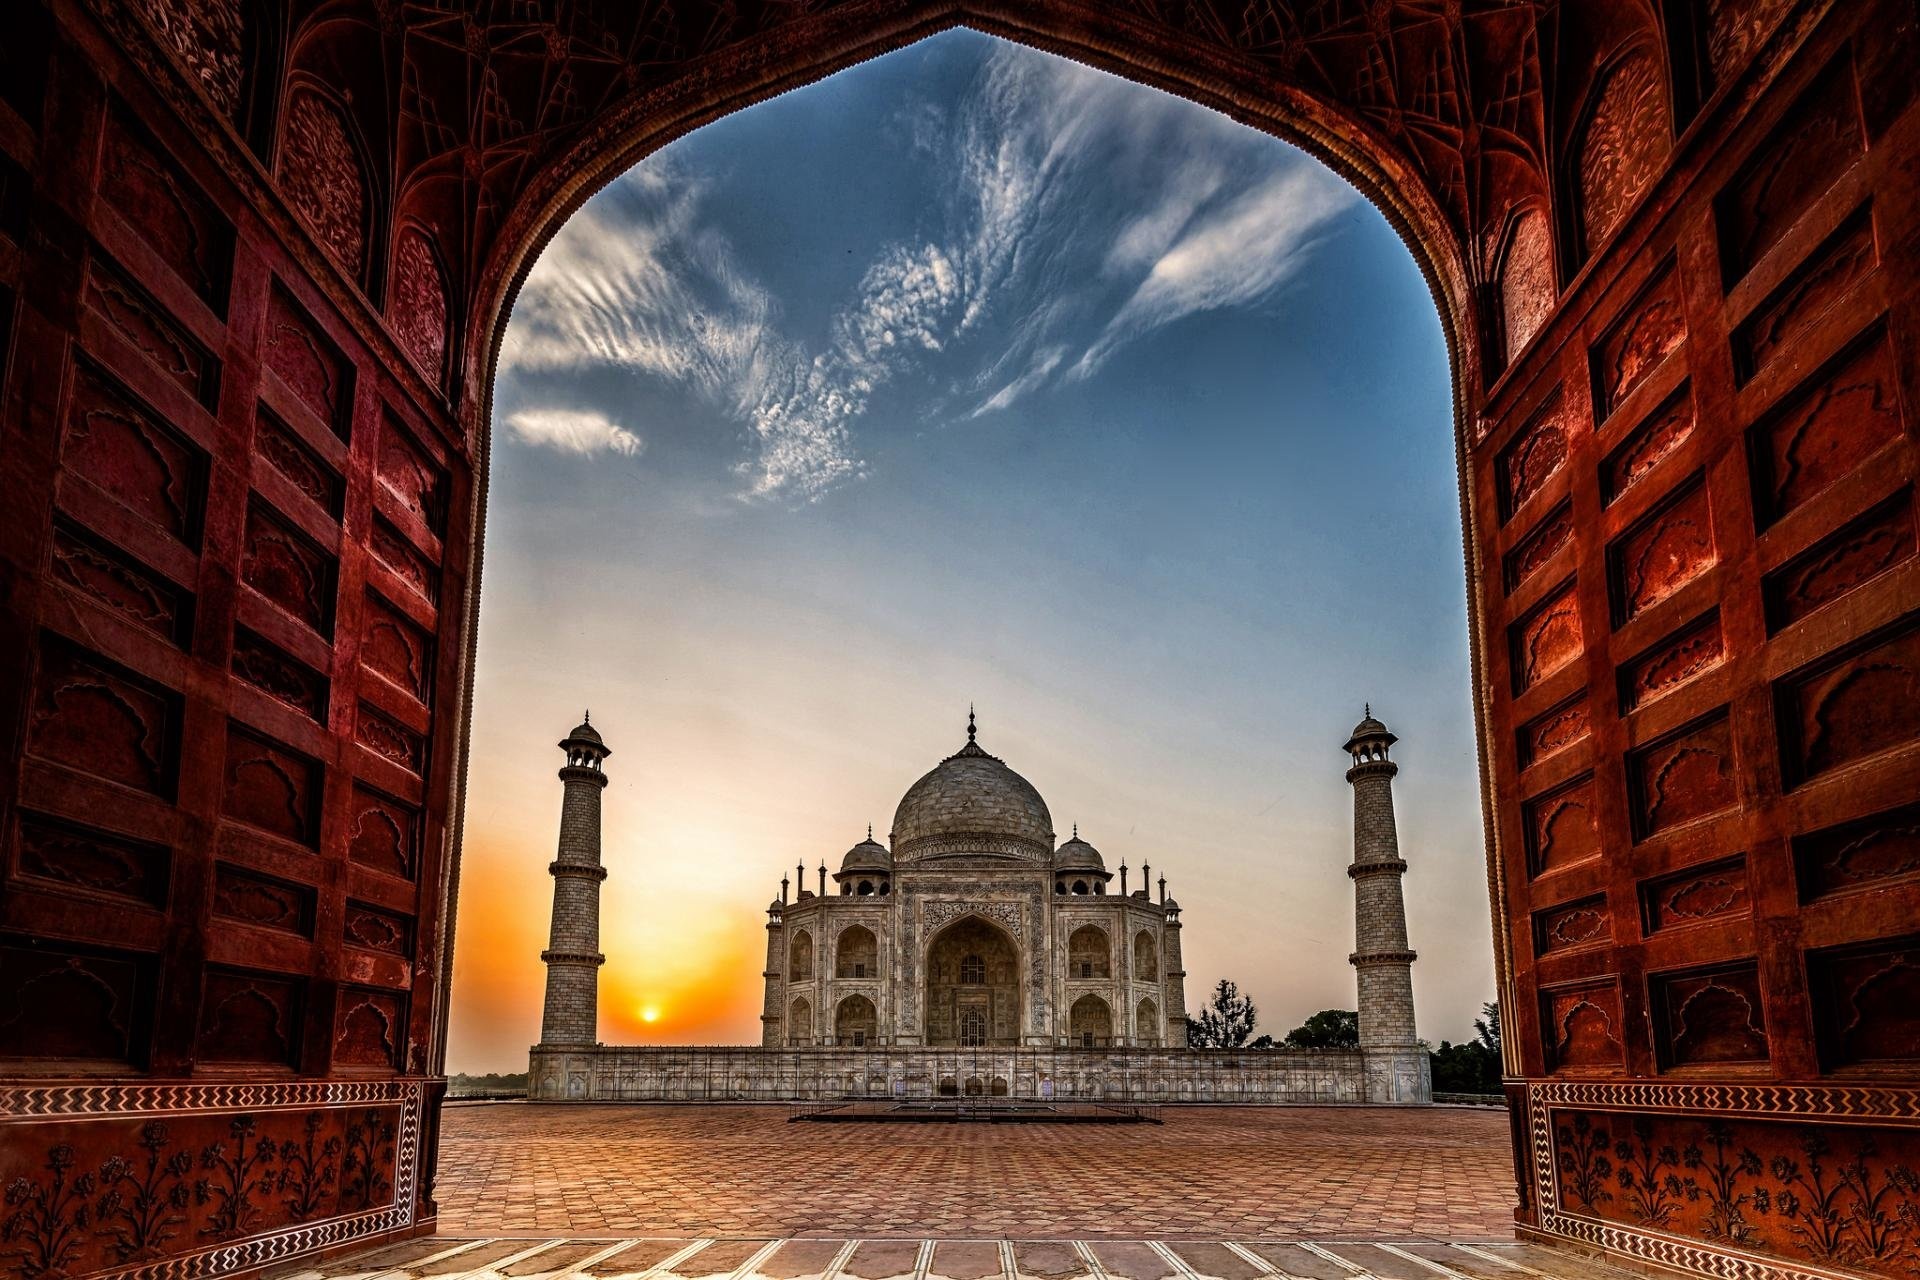 HD Taj Mahal desktop background, Free download, Taj Mahal wallpaper, PC, 1920x1280 HD Desktop